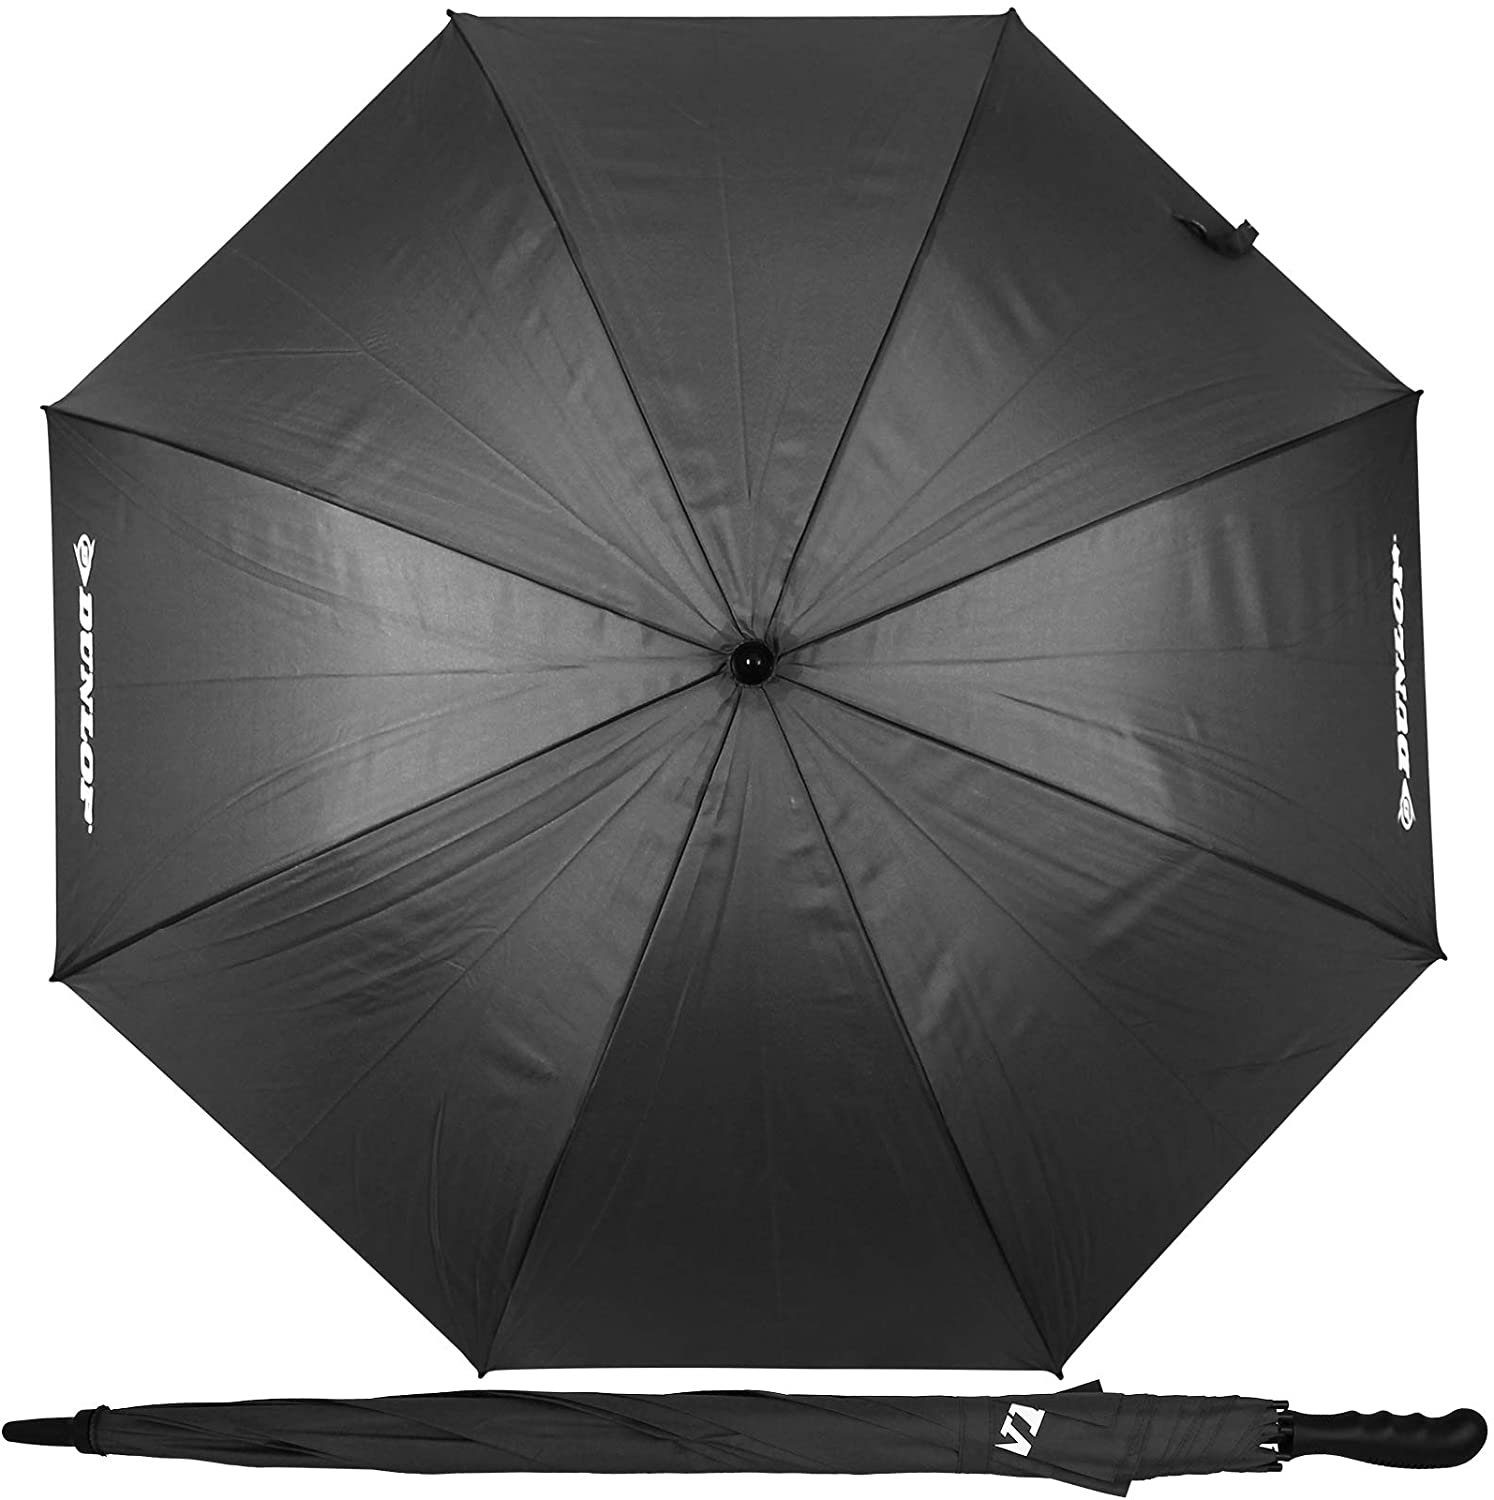 Dokado Partnerschirm XXL Paar Regenschirm 130cm mit Farbwahl Partnerschirm für 2 Personen Stockschirm Familienschirm Doppelregenschirm Dunlop grün